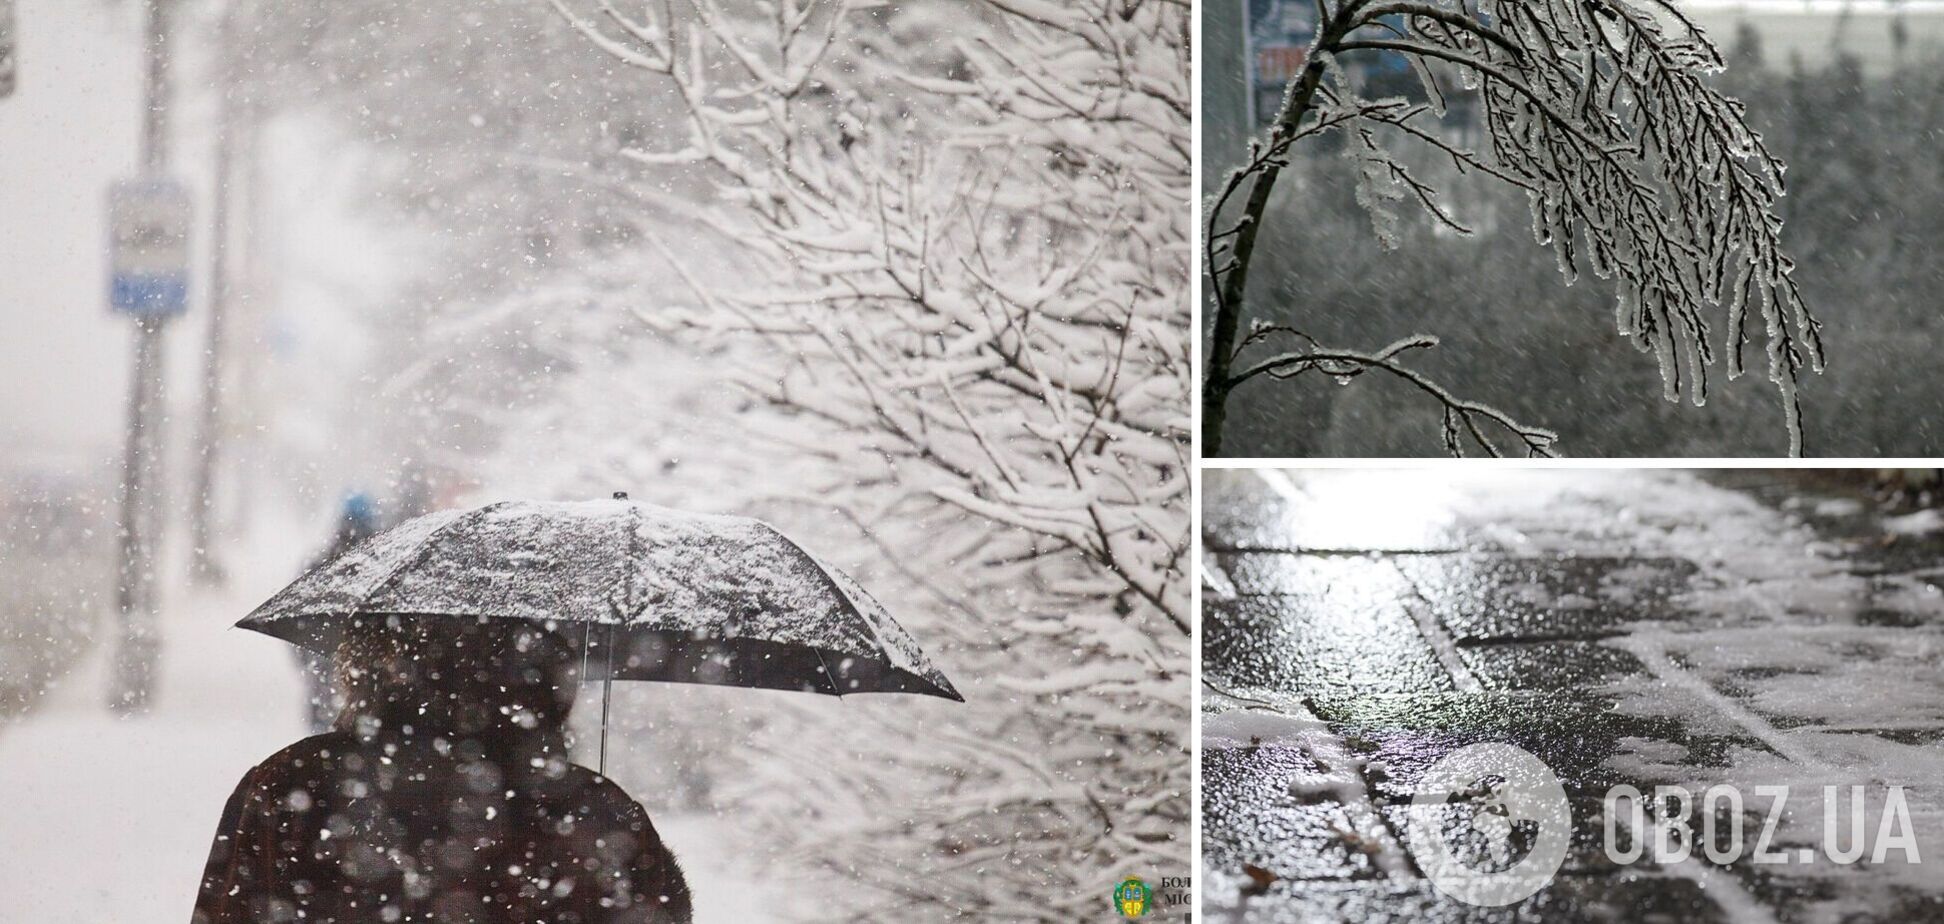 Сніг, дощ і незначне потепління: синоптики дали прогноз погоди на середу, 29 листопада